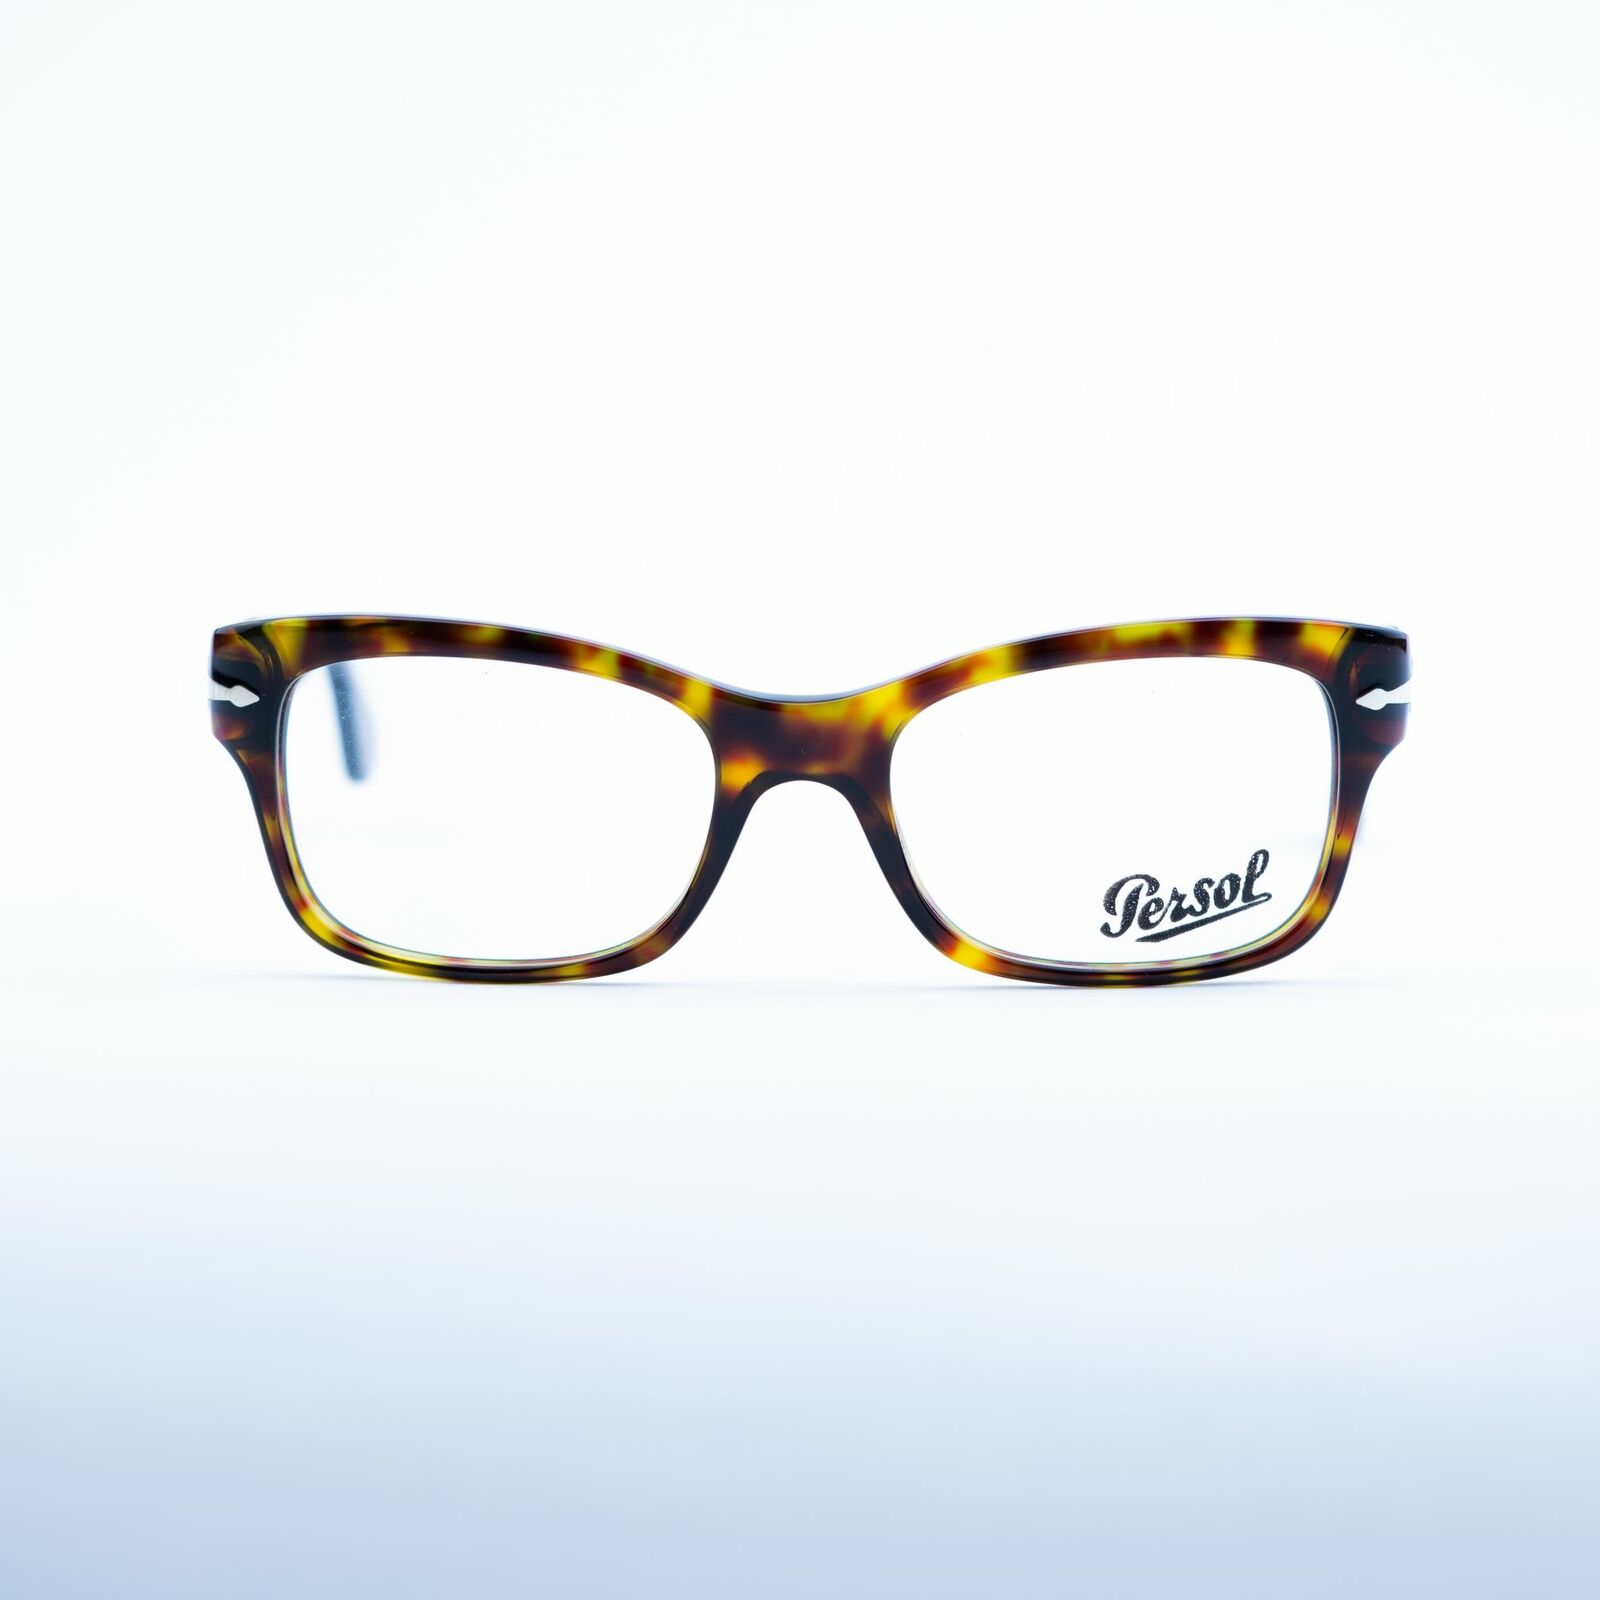 Persol 3054-V 24 Fassung Brille Brillengestell Brillenfassung